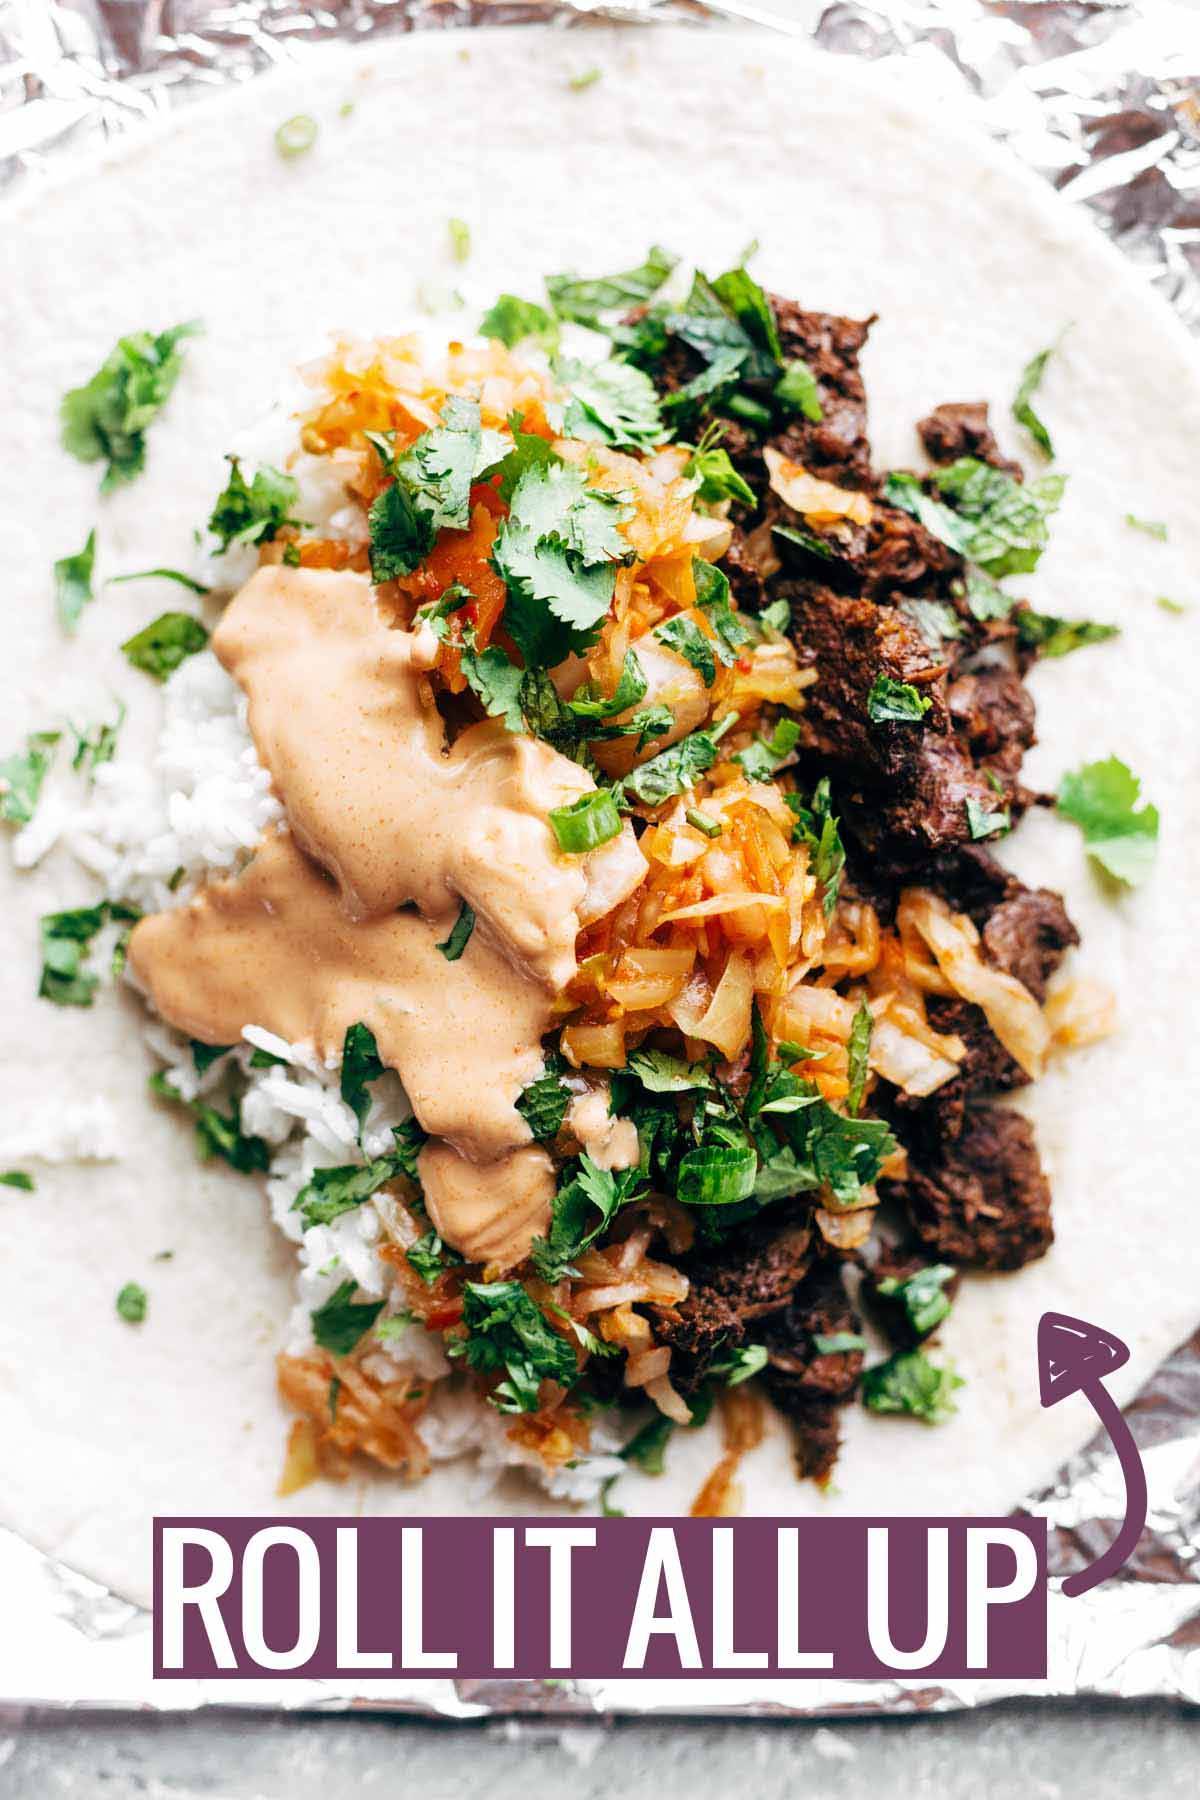 Roll Up The Burrito / Korean BBQ Burrito | pinchofyum.com